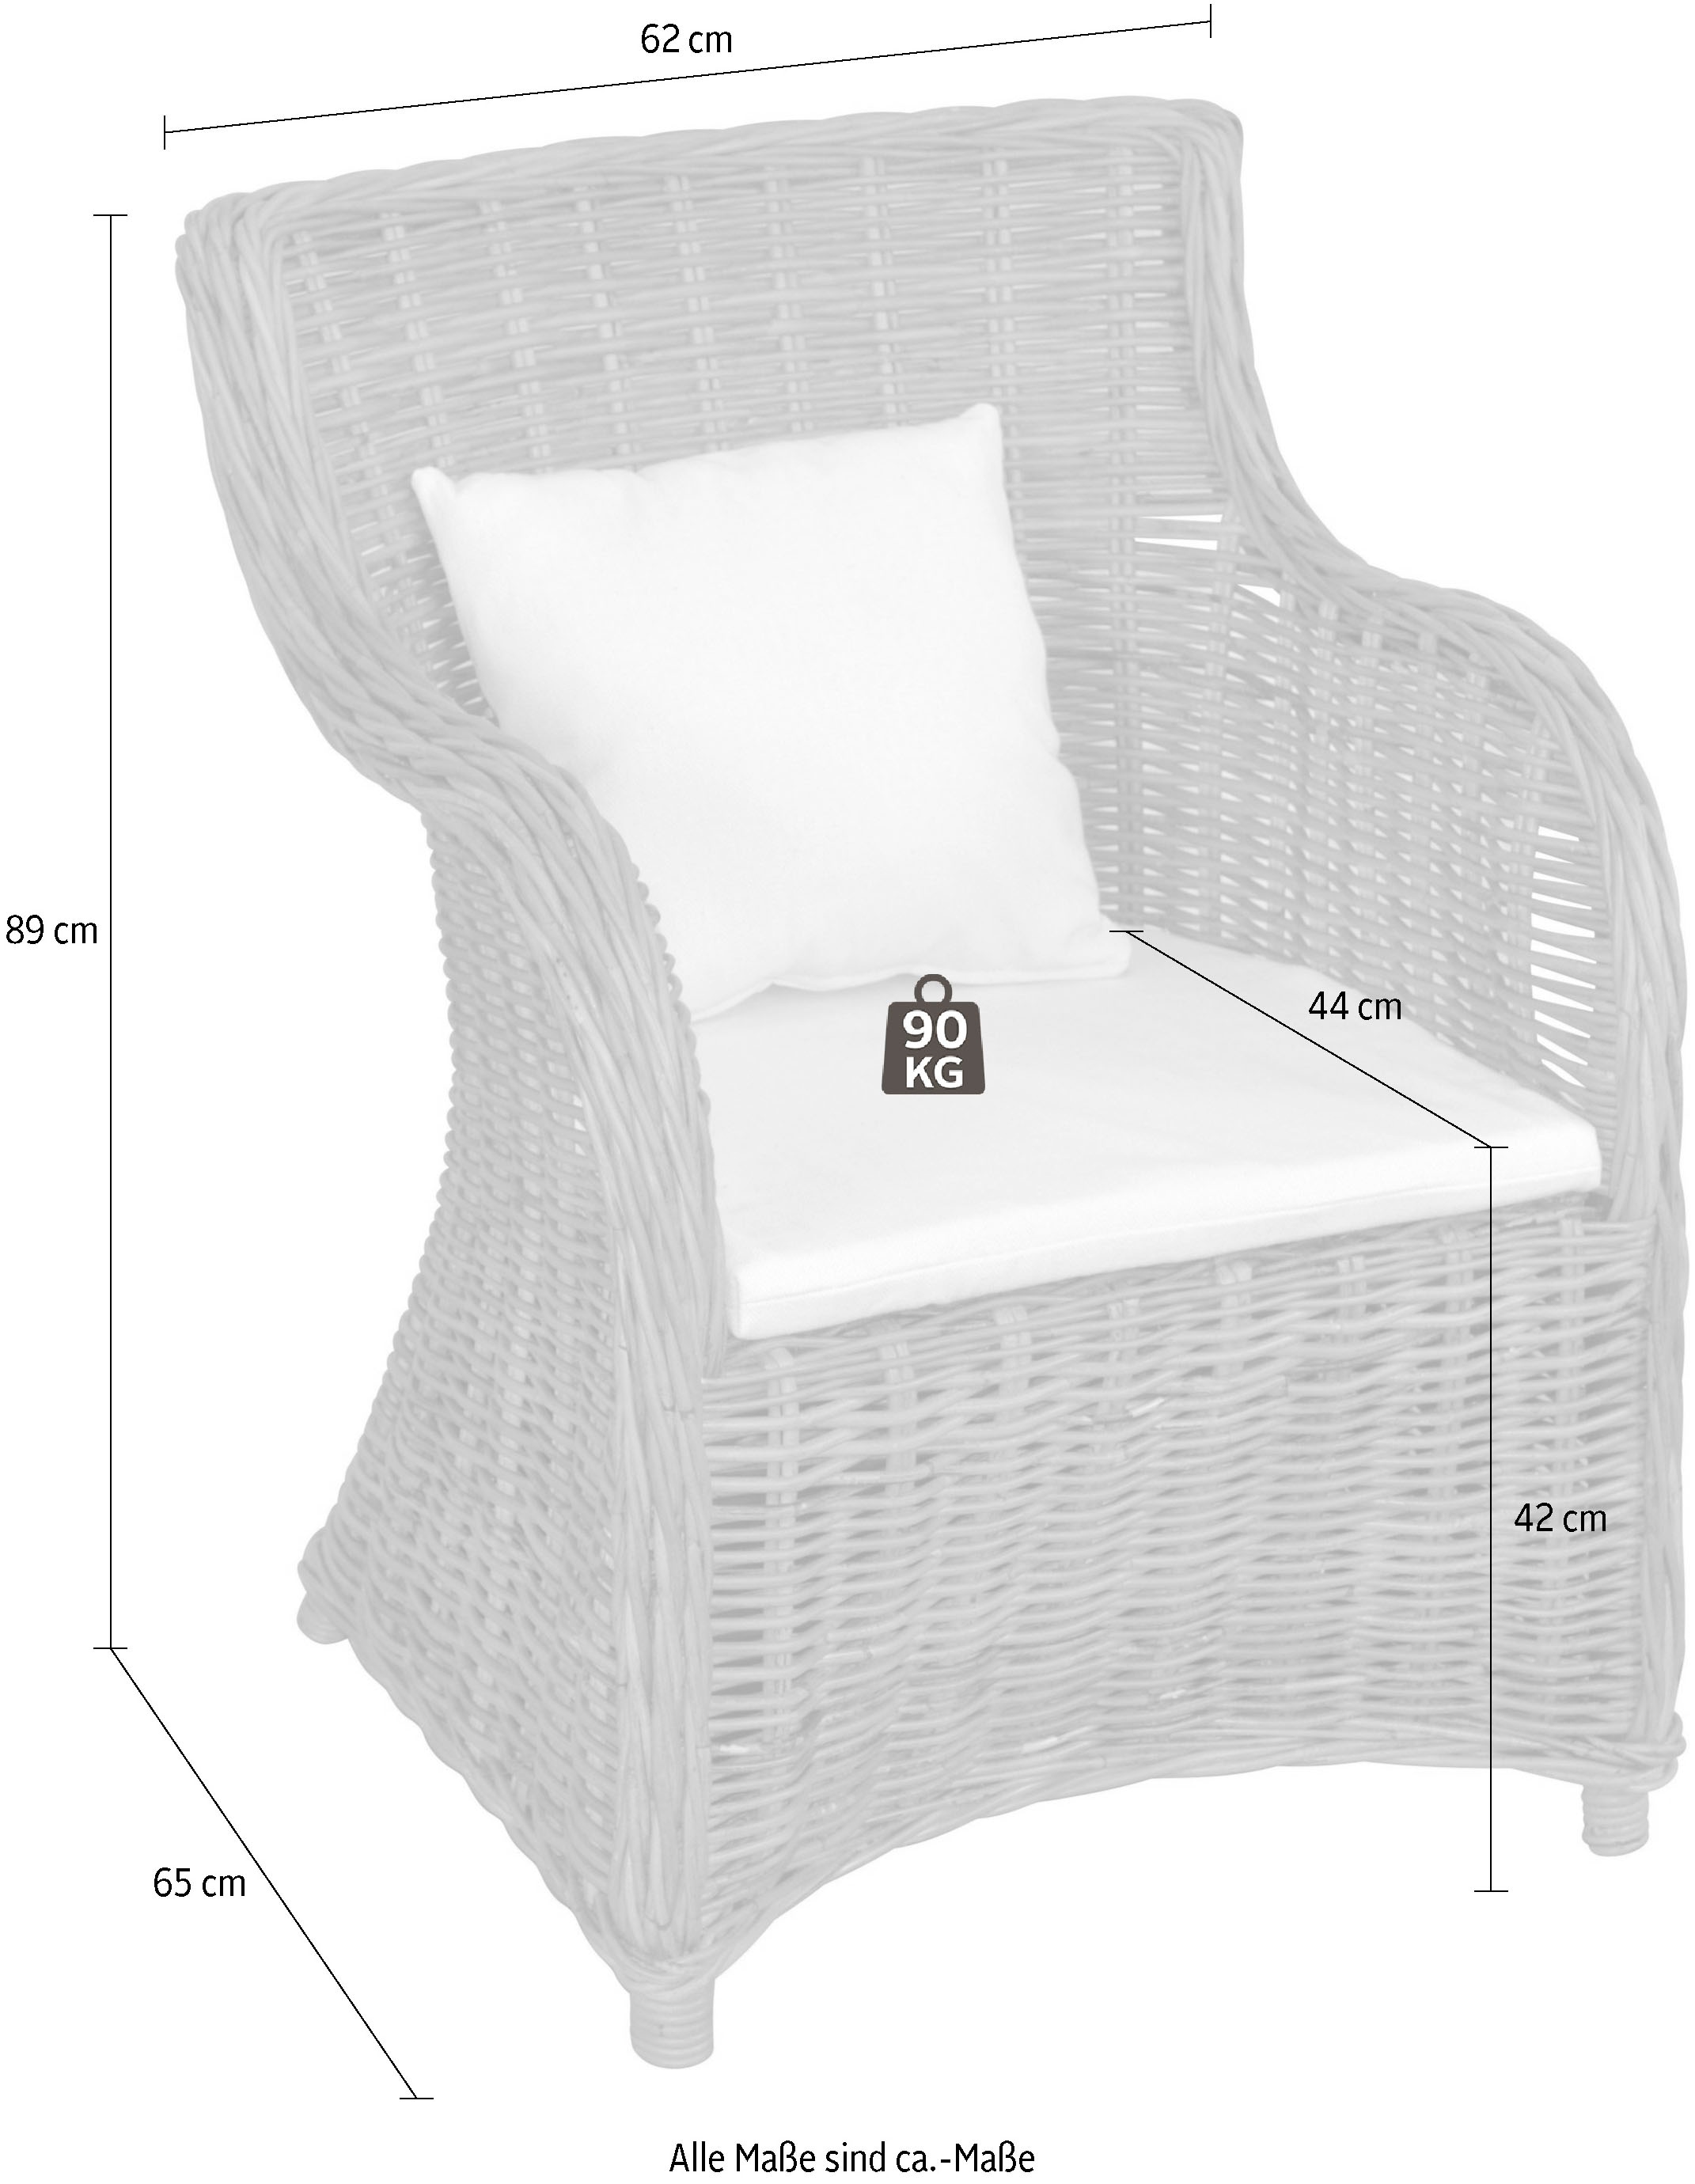 Home affaire Rattanstuhl, aus handgeflochtenem Rattan und großer Sitzschale, Breite 62 cm